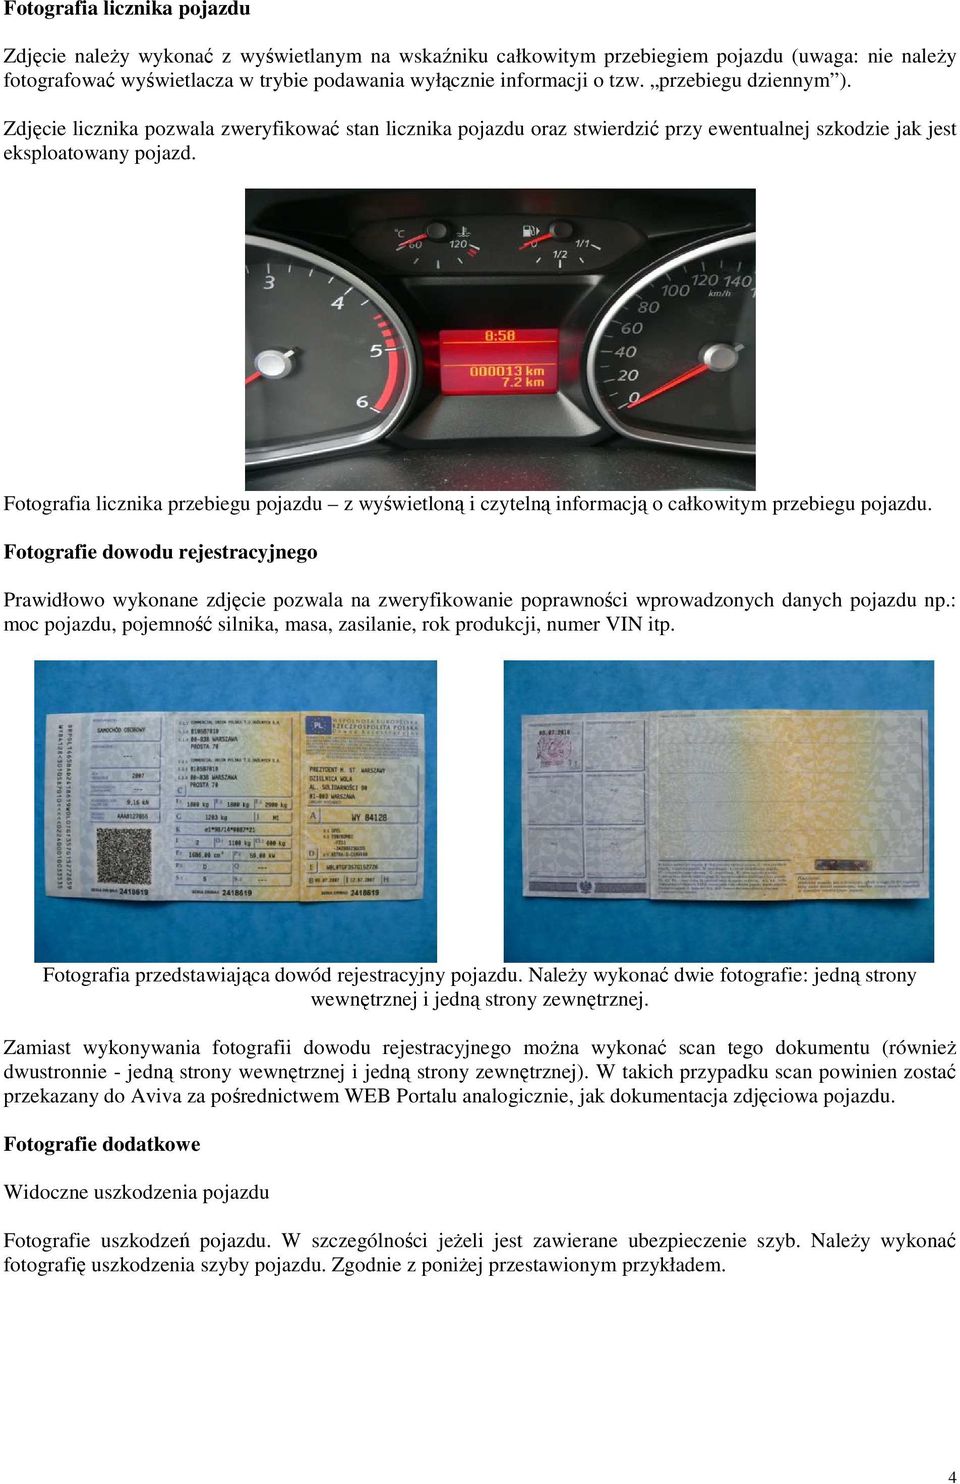 Fotografia licznika przebiegu pojazdu z wyświetloną i czytelną informacją o całkowitym przebiegu pojazdu.